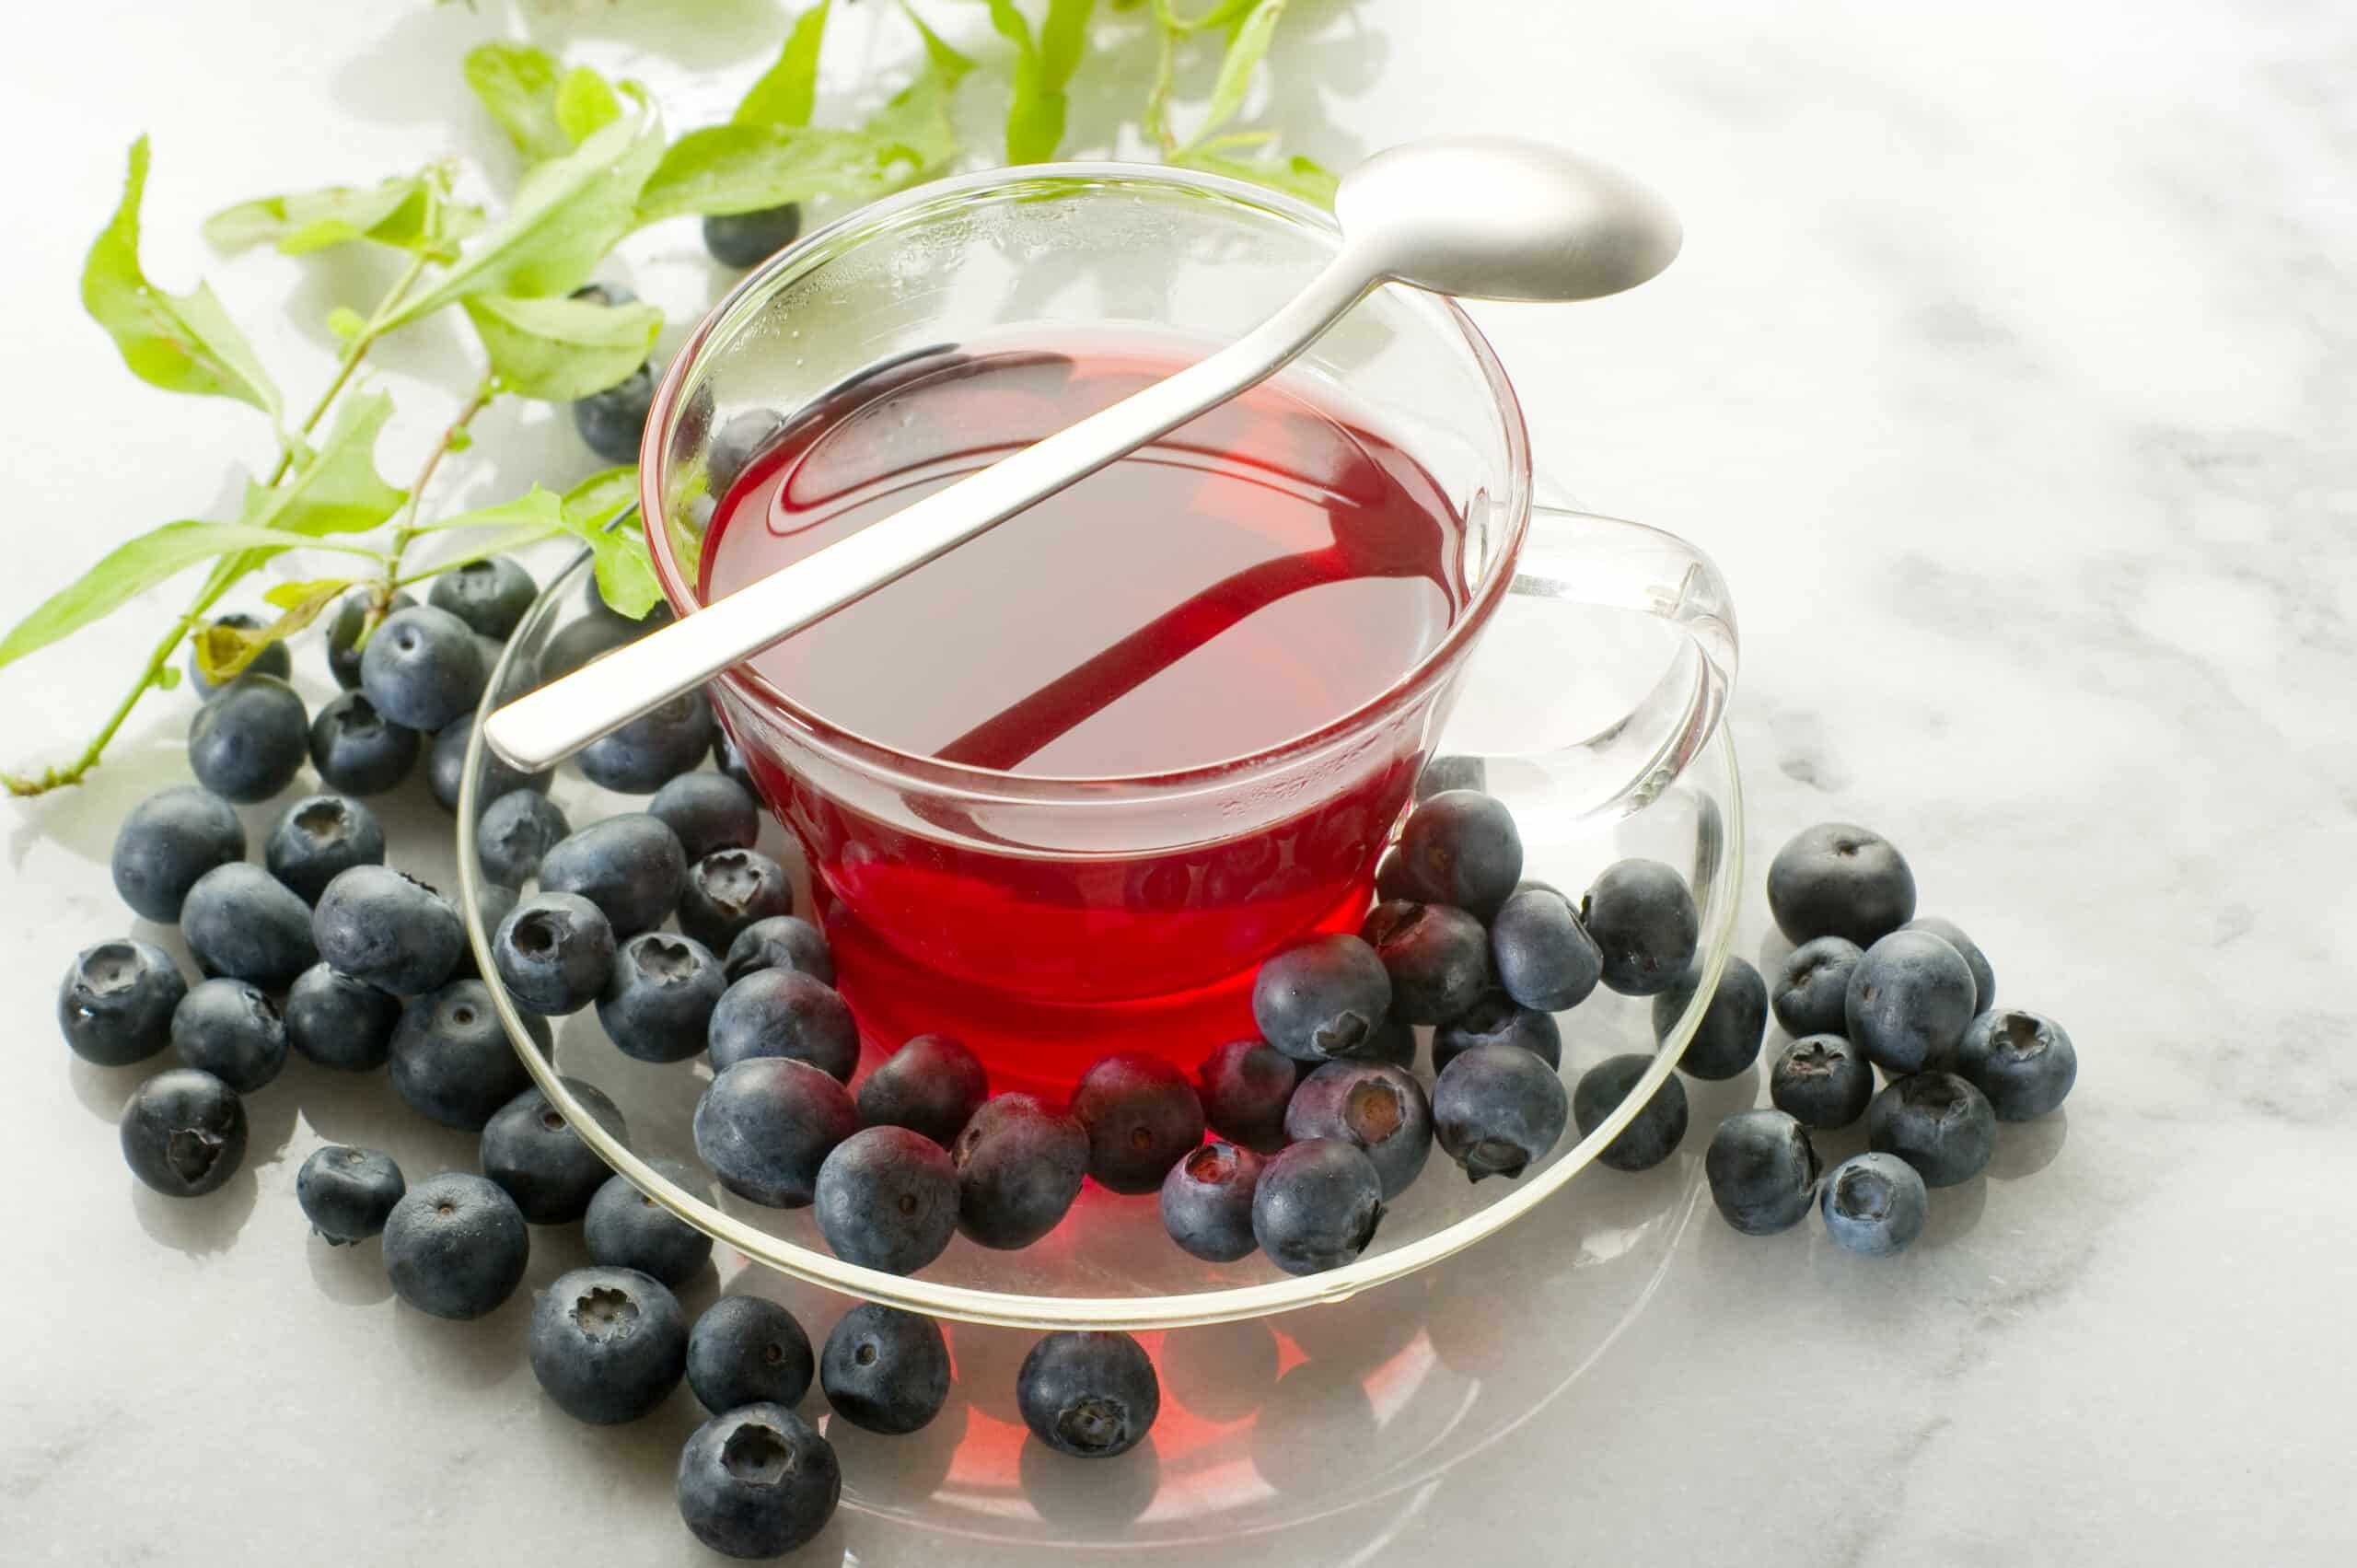  ब्लूबेरी चमत्कार: अद्भुत चाय और इसके अविश्वसनीय फायदे!